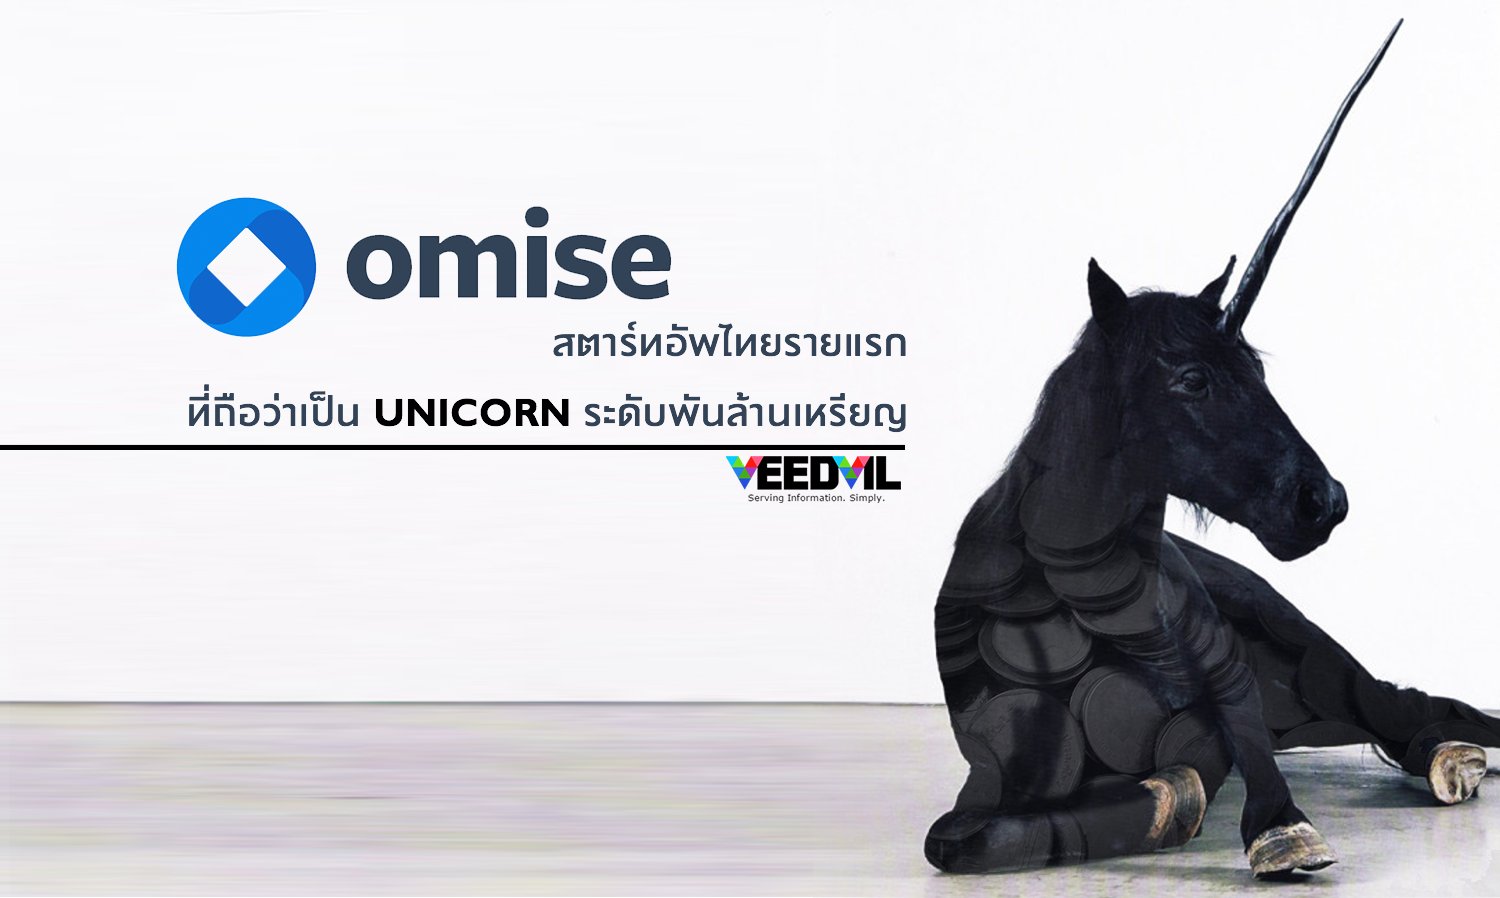 Omise สตาร์ทอัพไทยรายแรกที่ถือว่าเป็น Unicorn ระดับพันล้านเหรียญ